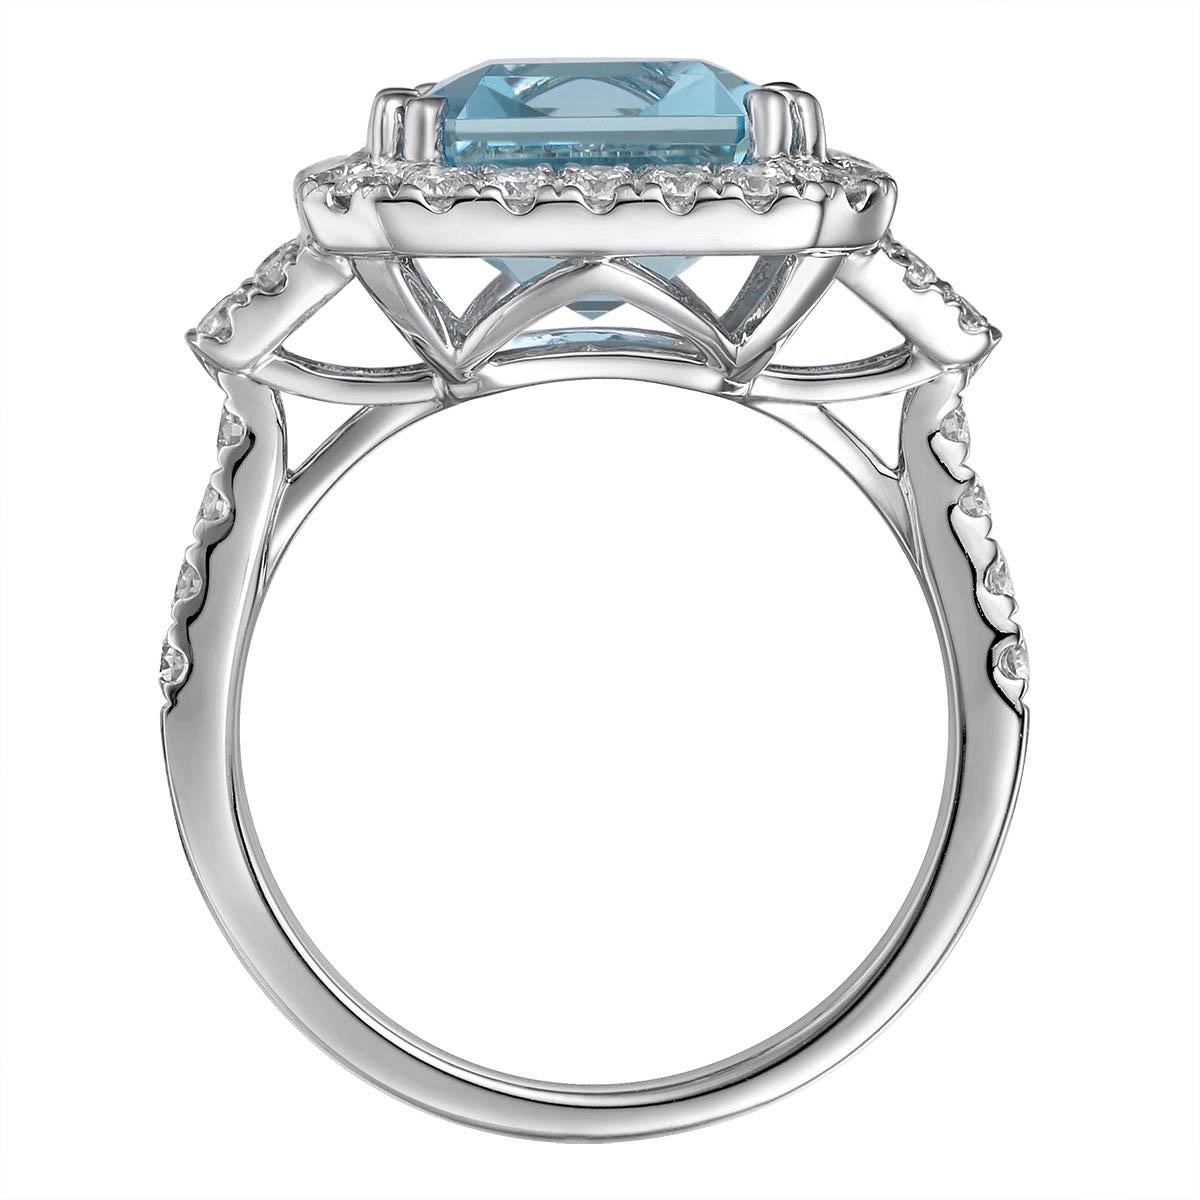 5.45carat Aquamarine & Diamond Cocktail Ring